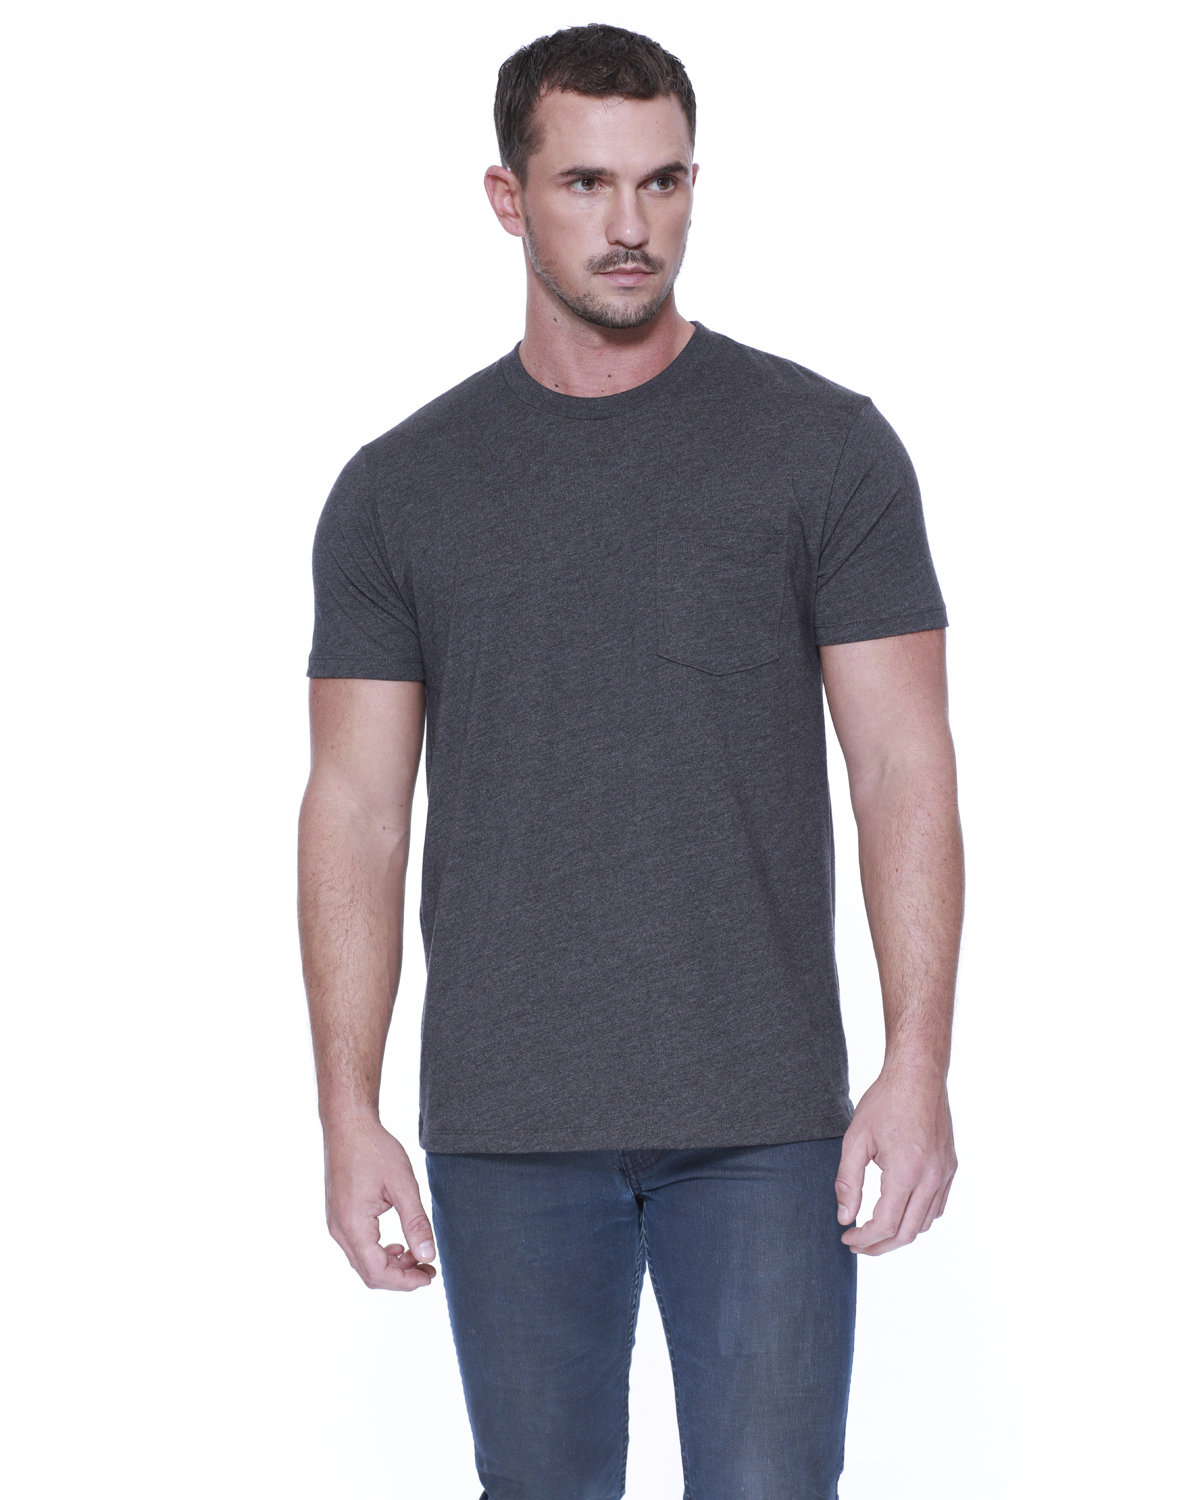 StarTee Men's CVC Pocket T-Shirt CHARCOAL HEATHER 